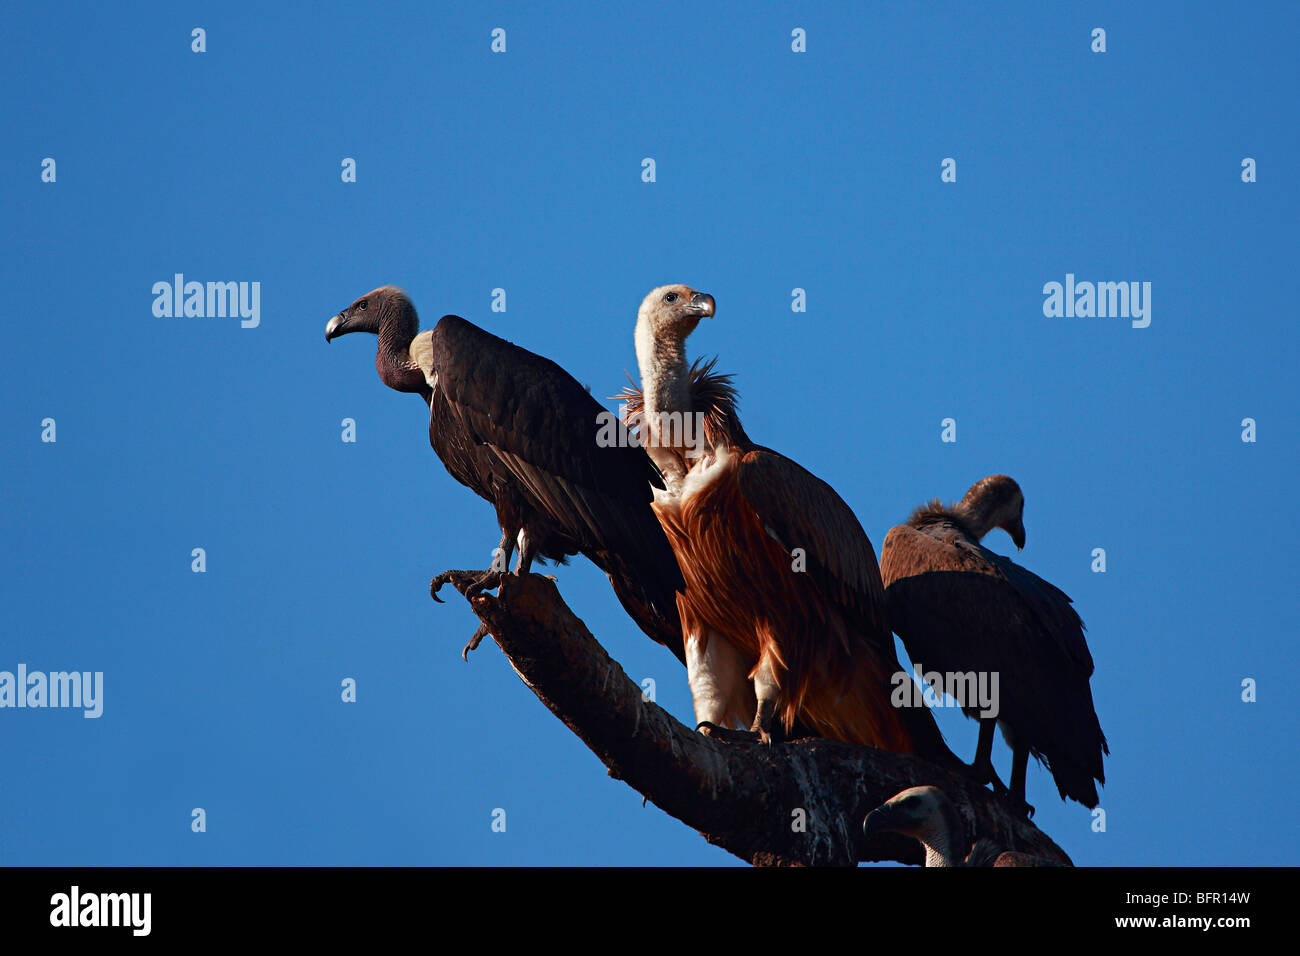 Gli avvoltoi, Gyps indicus, è un vecchio mondo vulture nella famiglia Accipitridae. Foto Stock